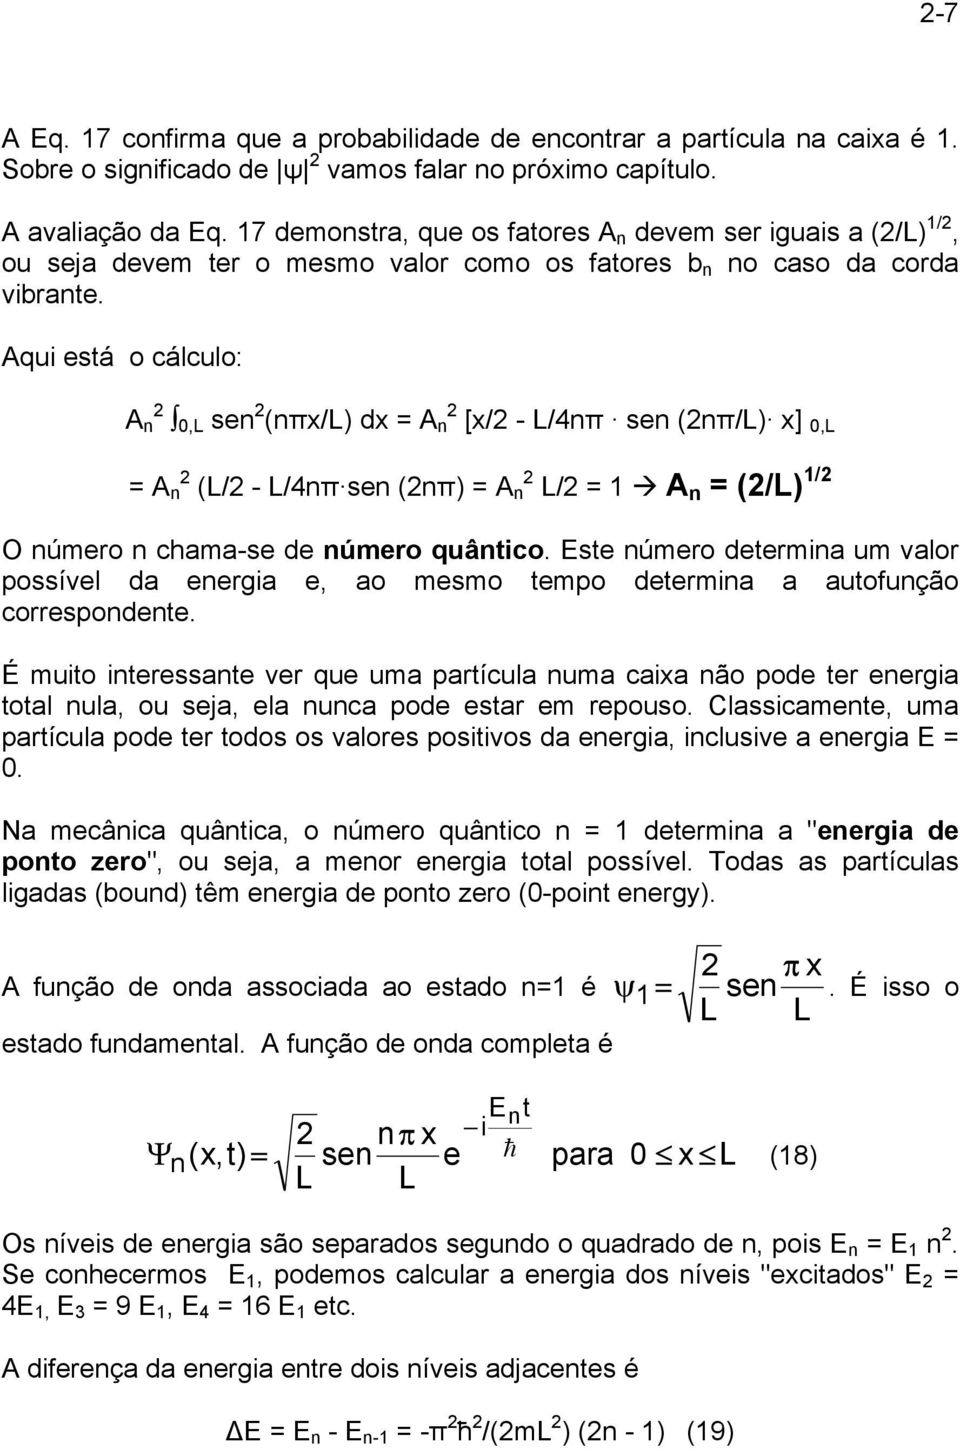 Aqui está o cálculo: A n,l sen (nπ/l) d = A n [/ - L/4nπ sen (nπ/l) ],L = A n (L/ - L/4nπ sen (nπ) = A n L/ = A n = (/L) / O número n chama-se de número quântico.